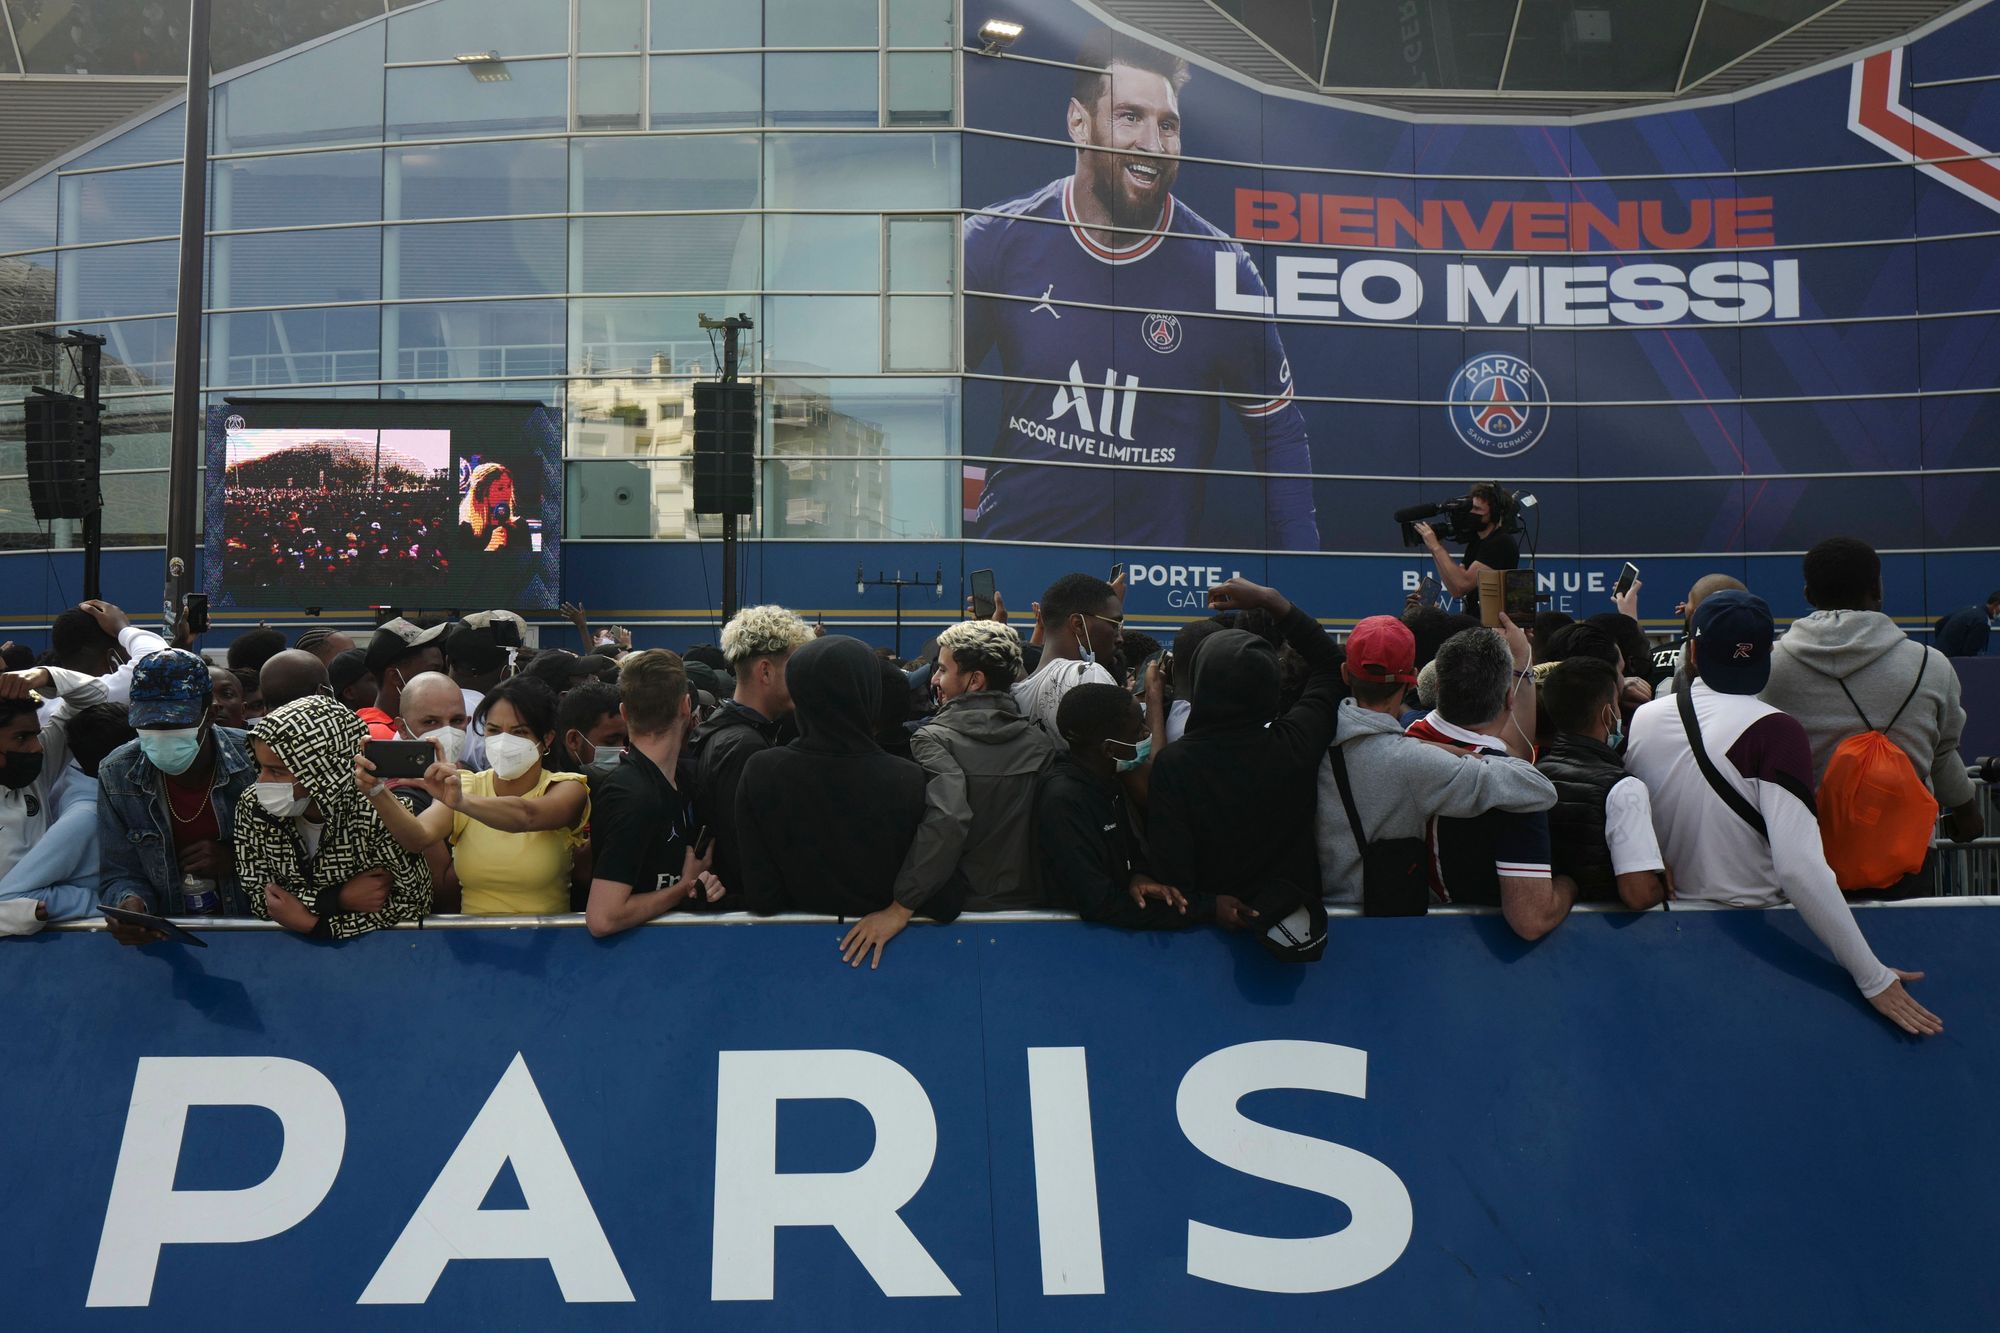 Párizsban szurkolók ezrei várták Messit a Parc des Princes stadion előtt Fotó: MTI/AP/Rafael Yaghobzadeh